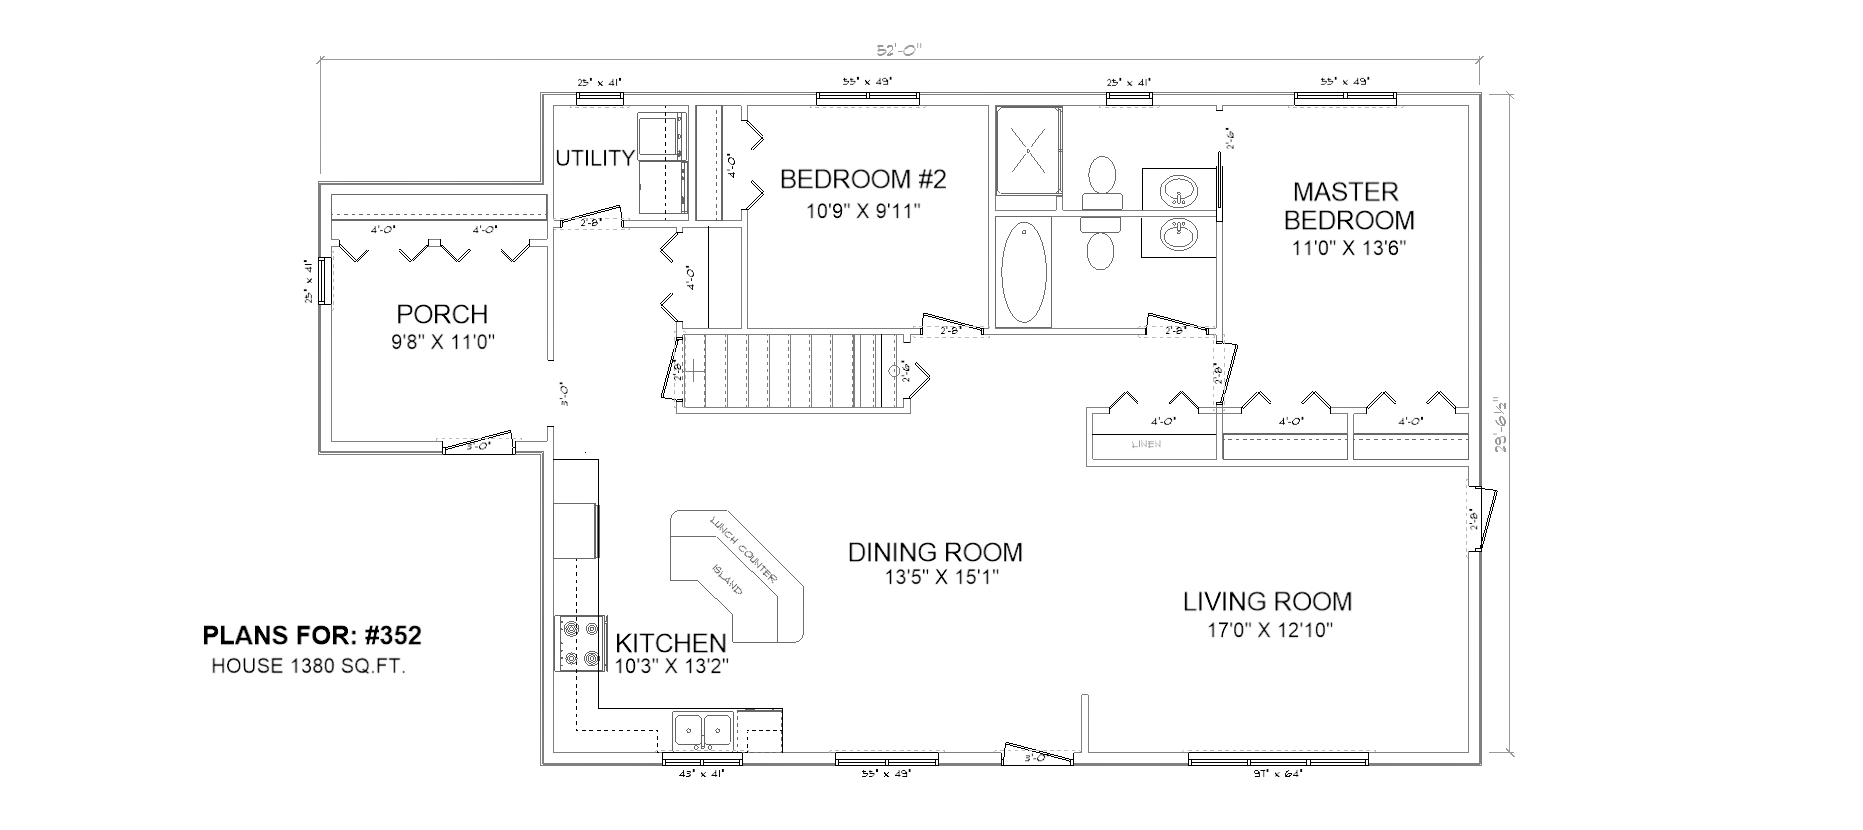 Penner Homes Floor Plan Id: 352